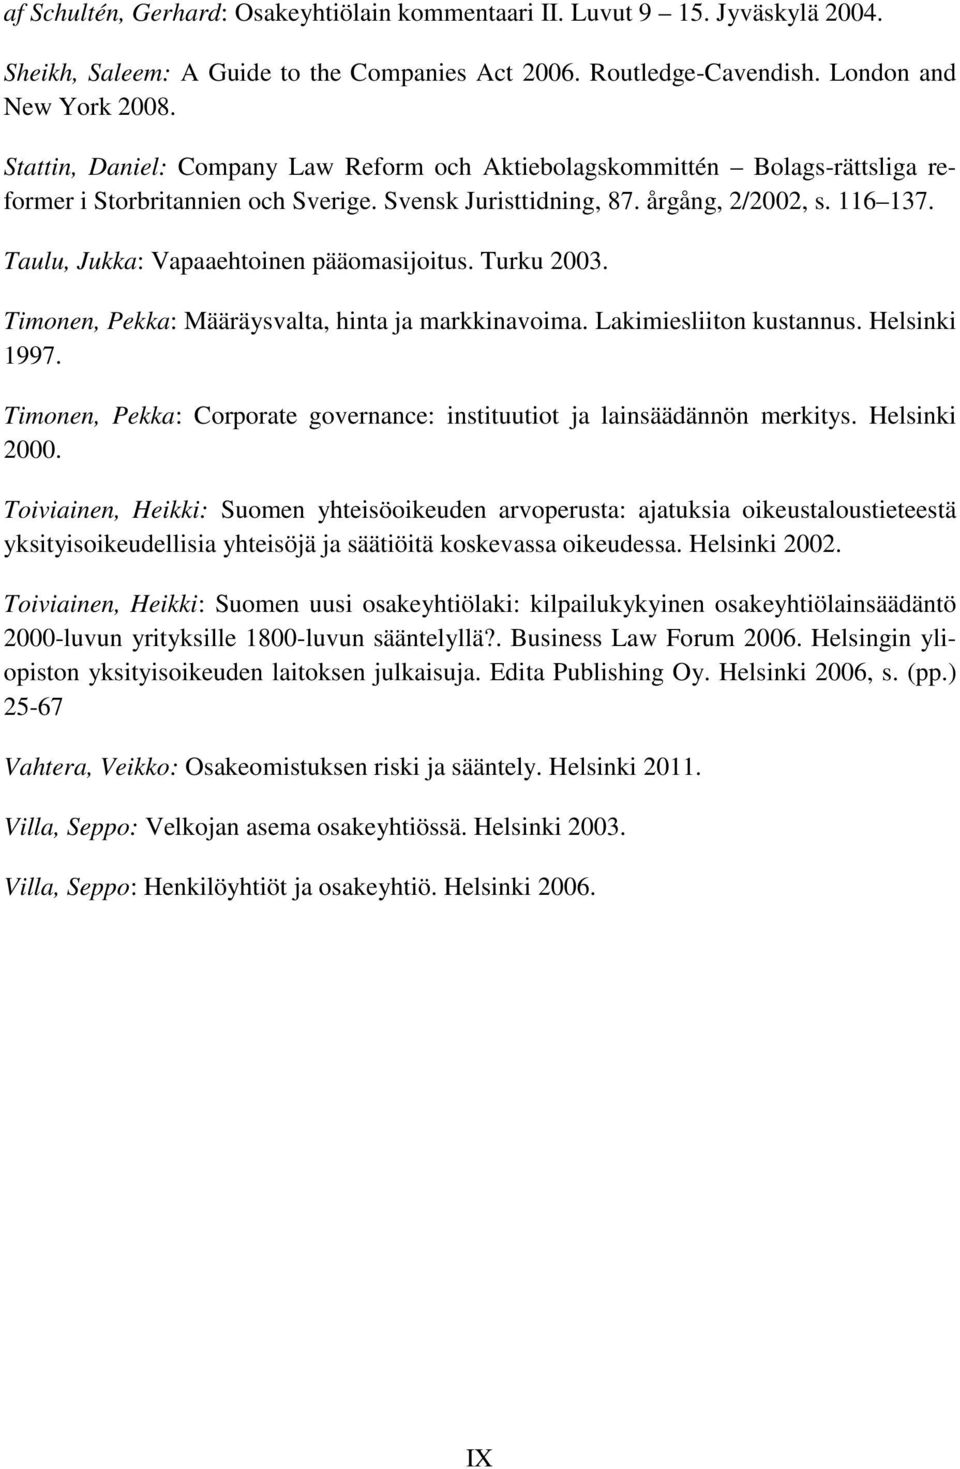 Taulu, Jukka: Vapaaehtoinen pääomasijoitus. Turku 2003. Timonen, Pekka: Määräysvalta, hinta ja markkinavoima. Lakimiesliiton kustannus. Helsinki 1997.